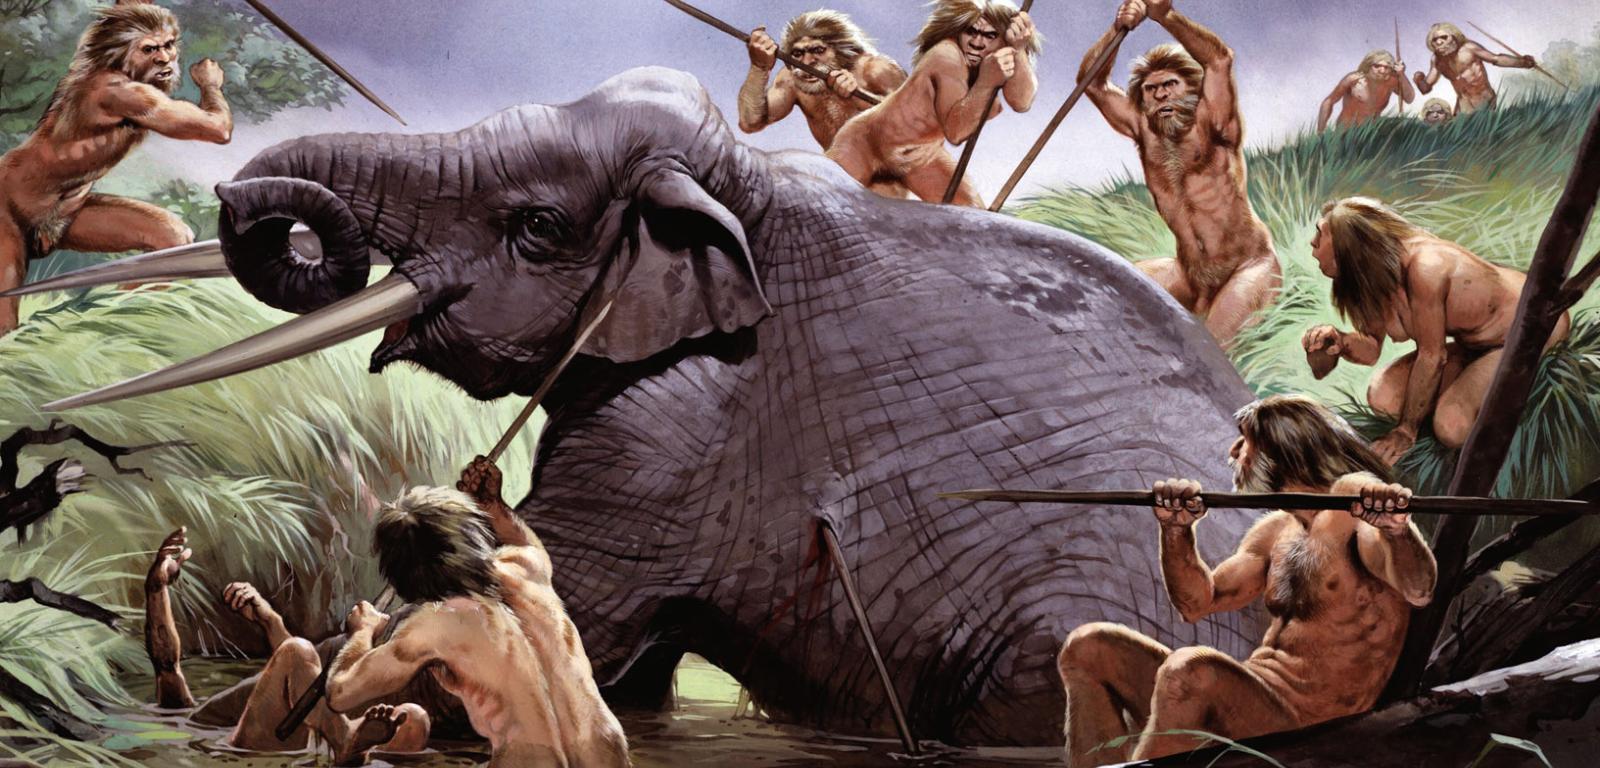 Grupa ludzi z gatunku Homo heidelbergensis – typowanego na ostatniego wspólnego przodka nas, neandertalczyków i denisowian – dobija schwytanego w pułapkę słonia (wizja artysty).